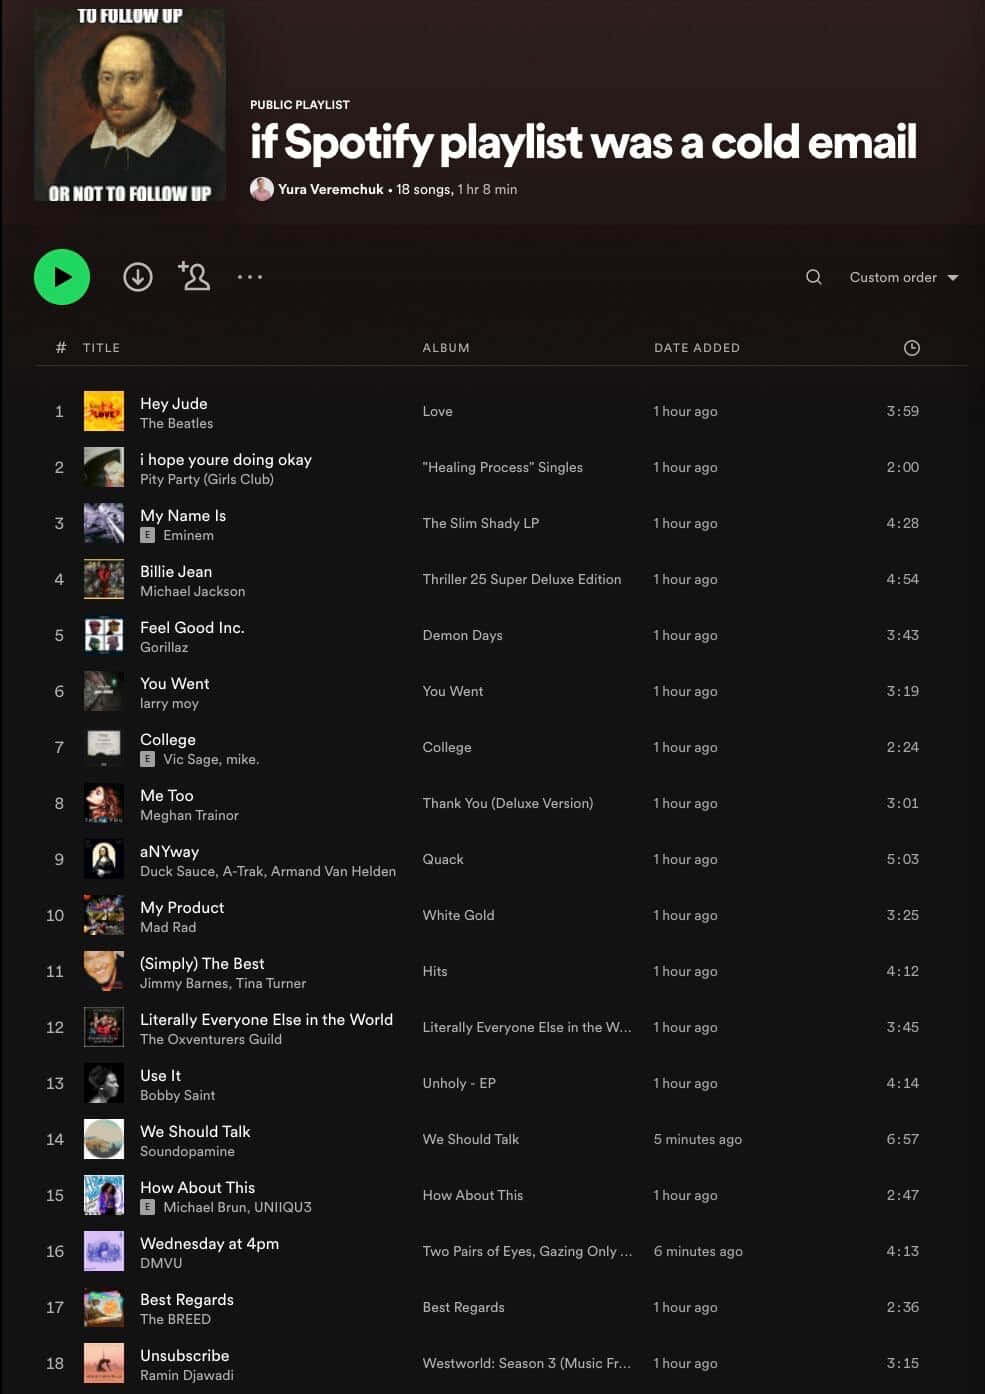 Creala Tua Playlist Perfetta Con Spotify